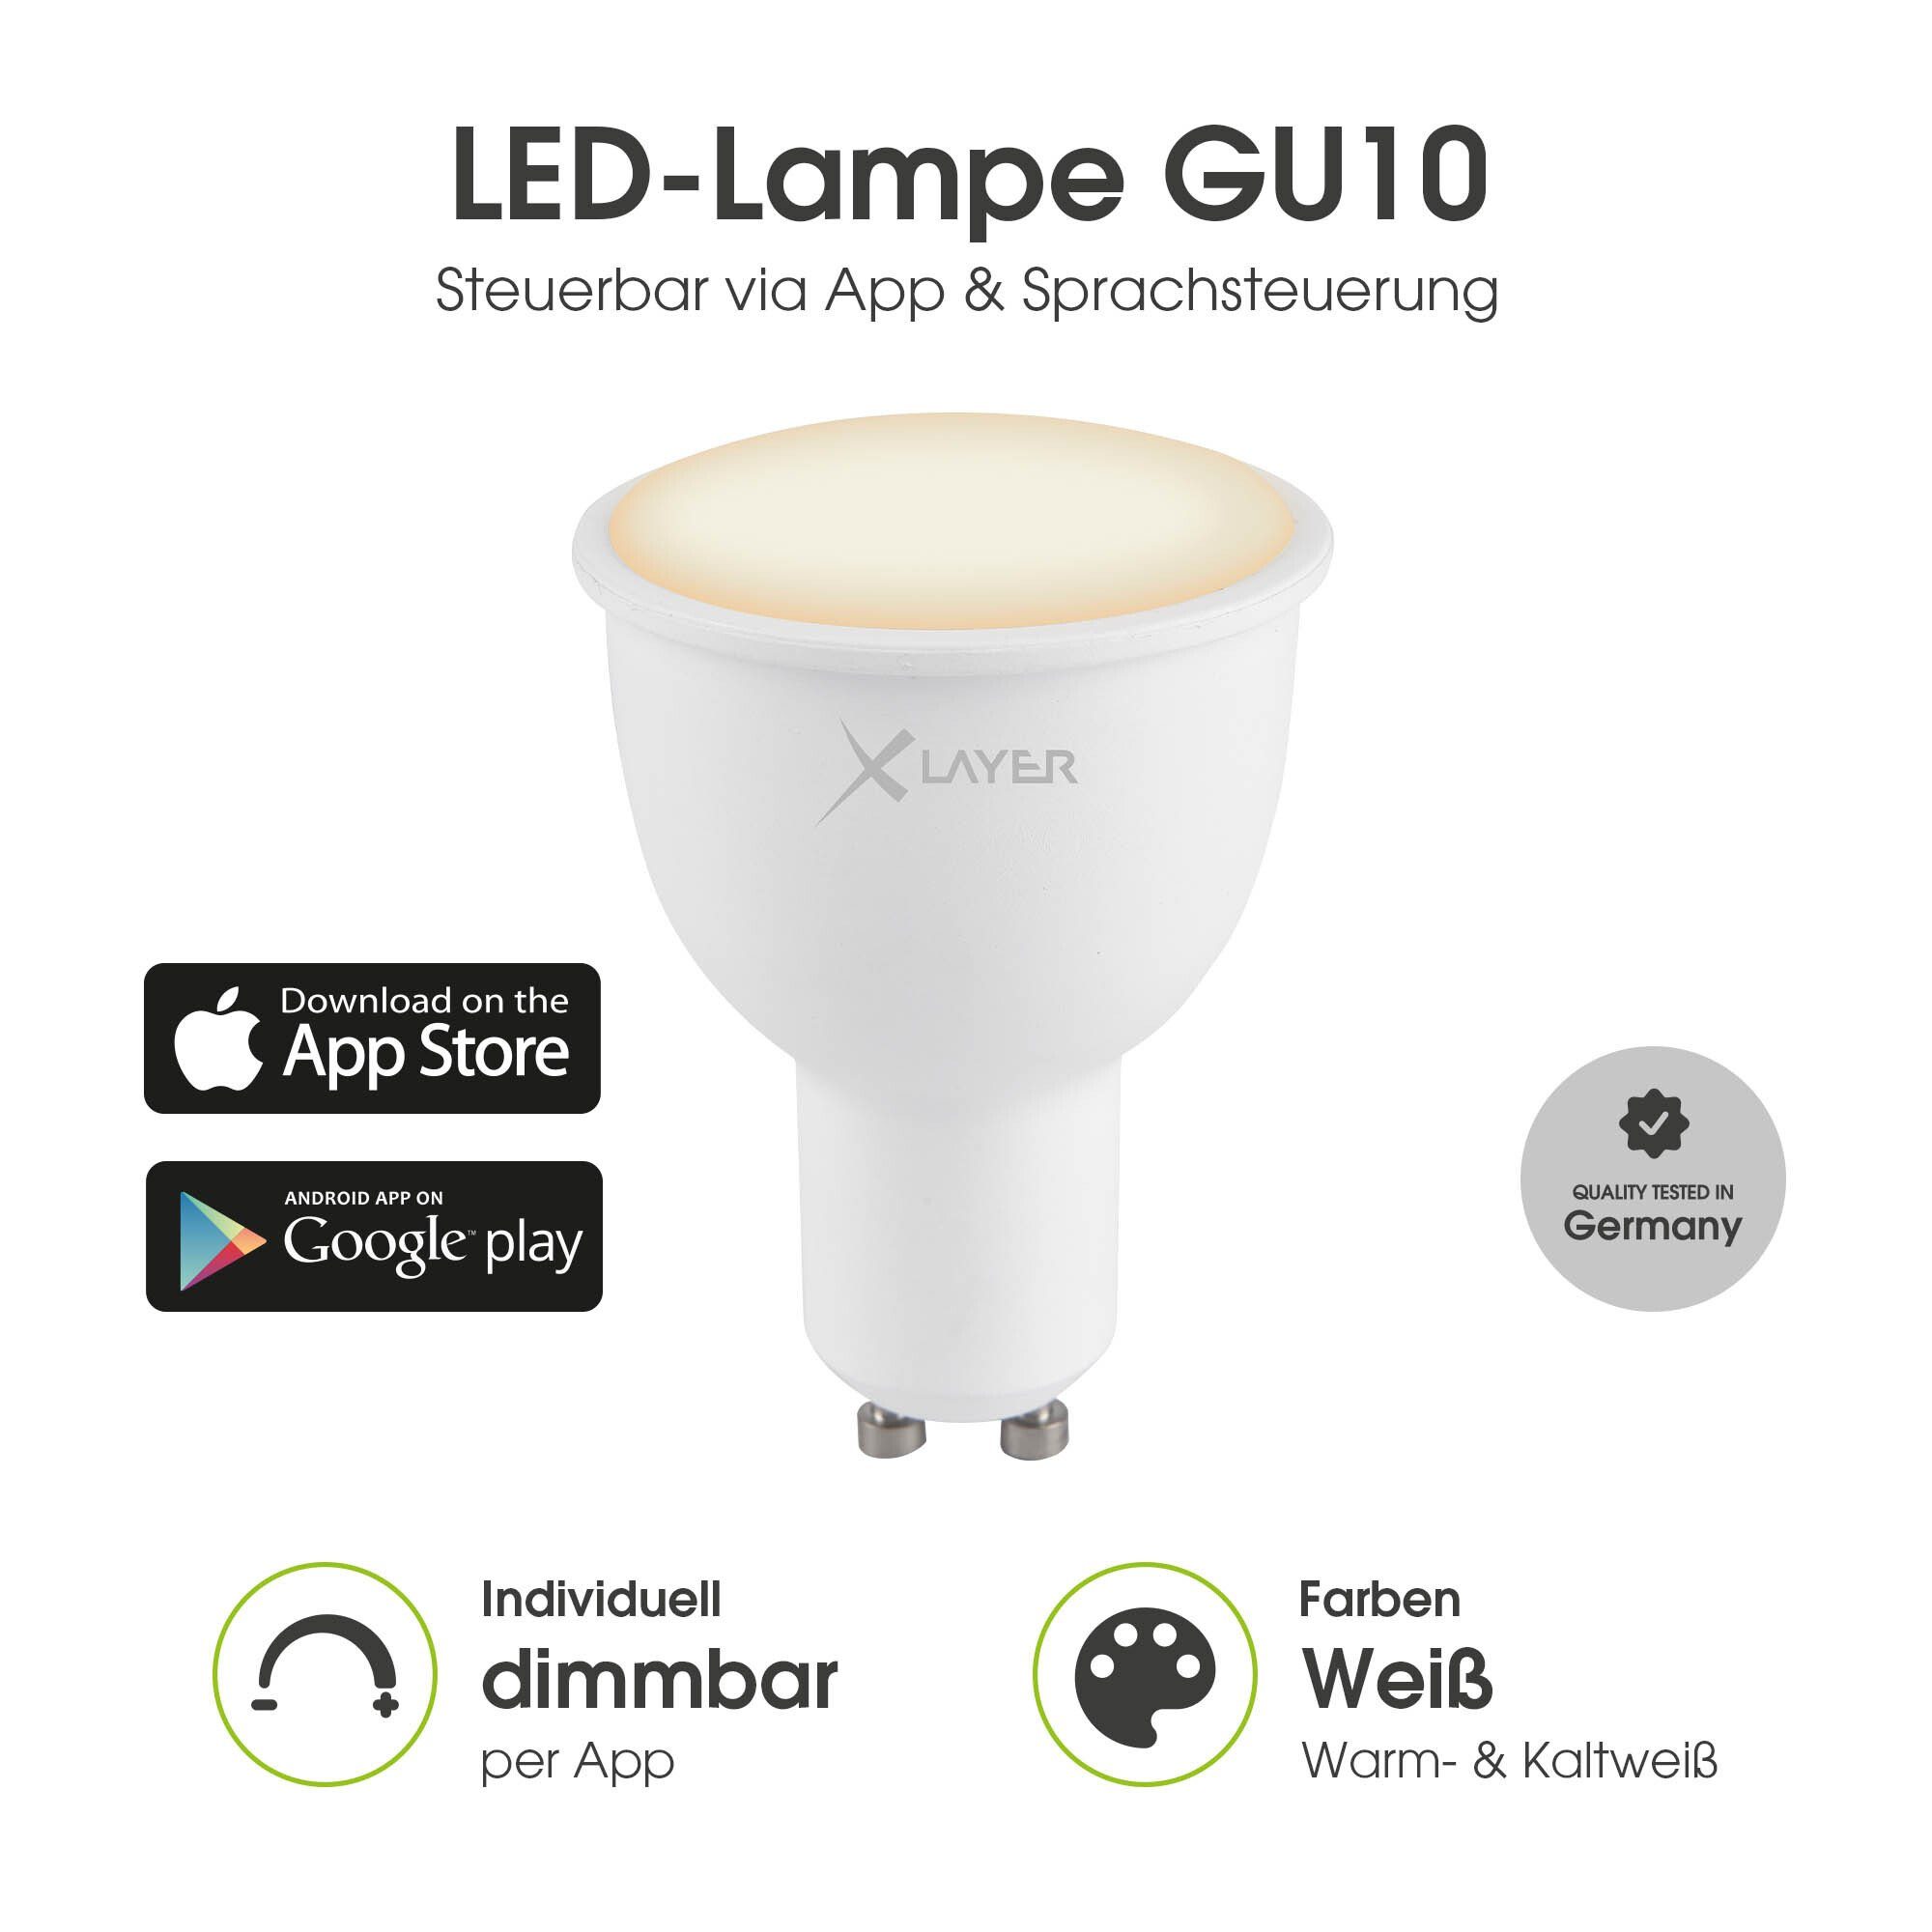 XLAYER Smarte LED-Leuchte WLAN LED Lampe Smart Echo GU10 4.5W Warm- und Kaltweiß Dimmbar